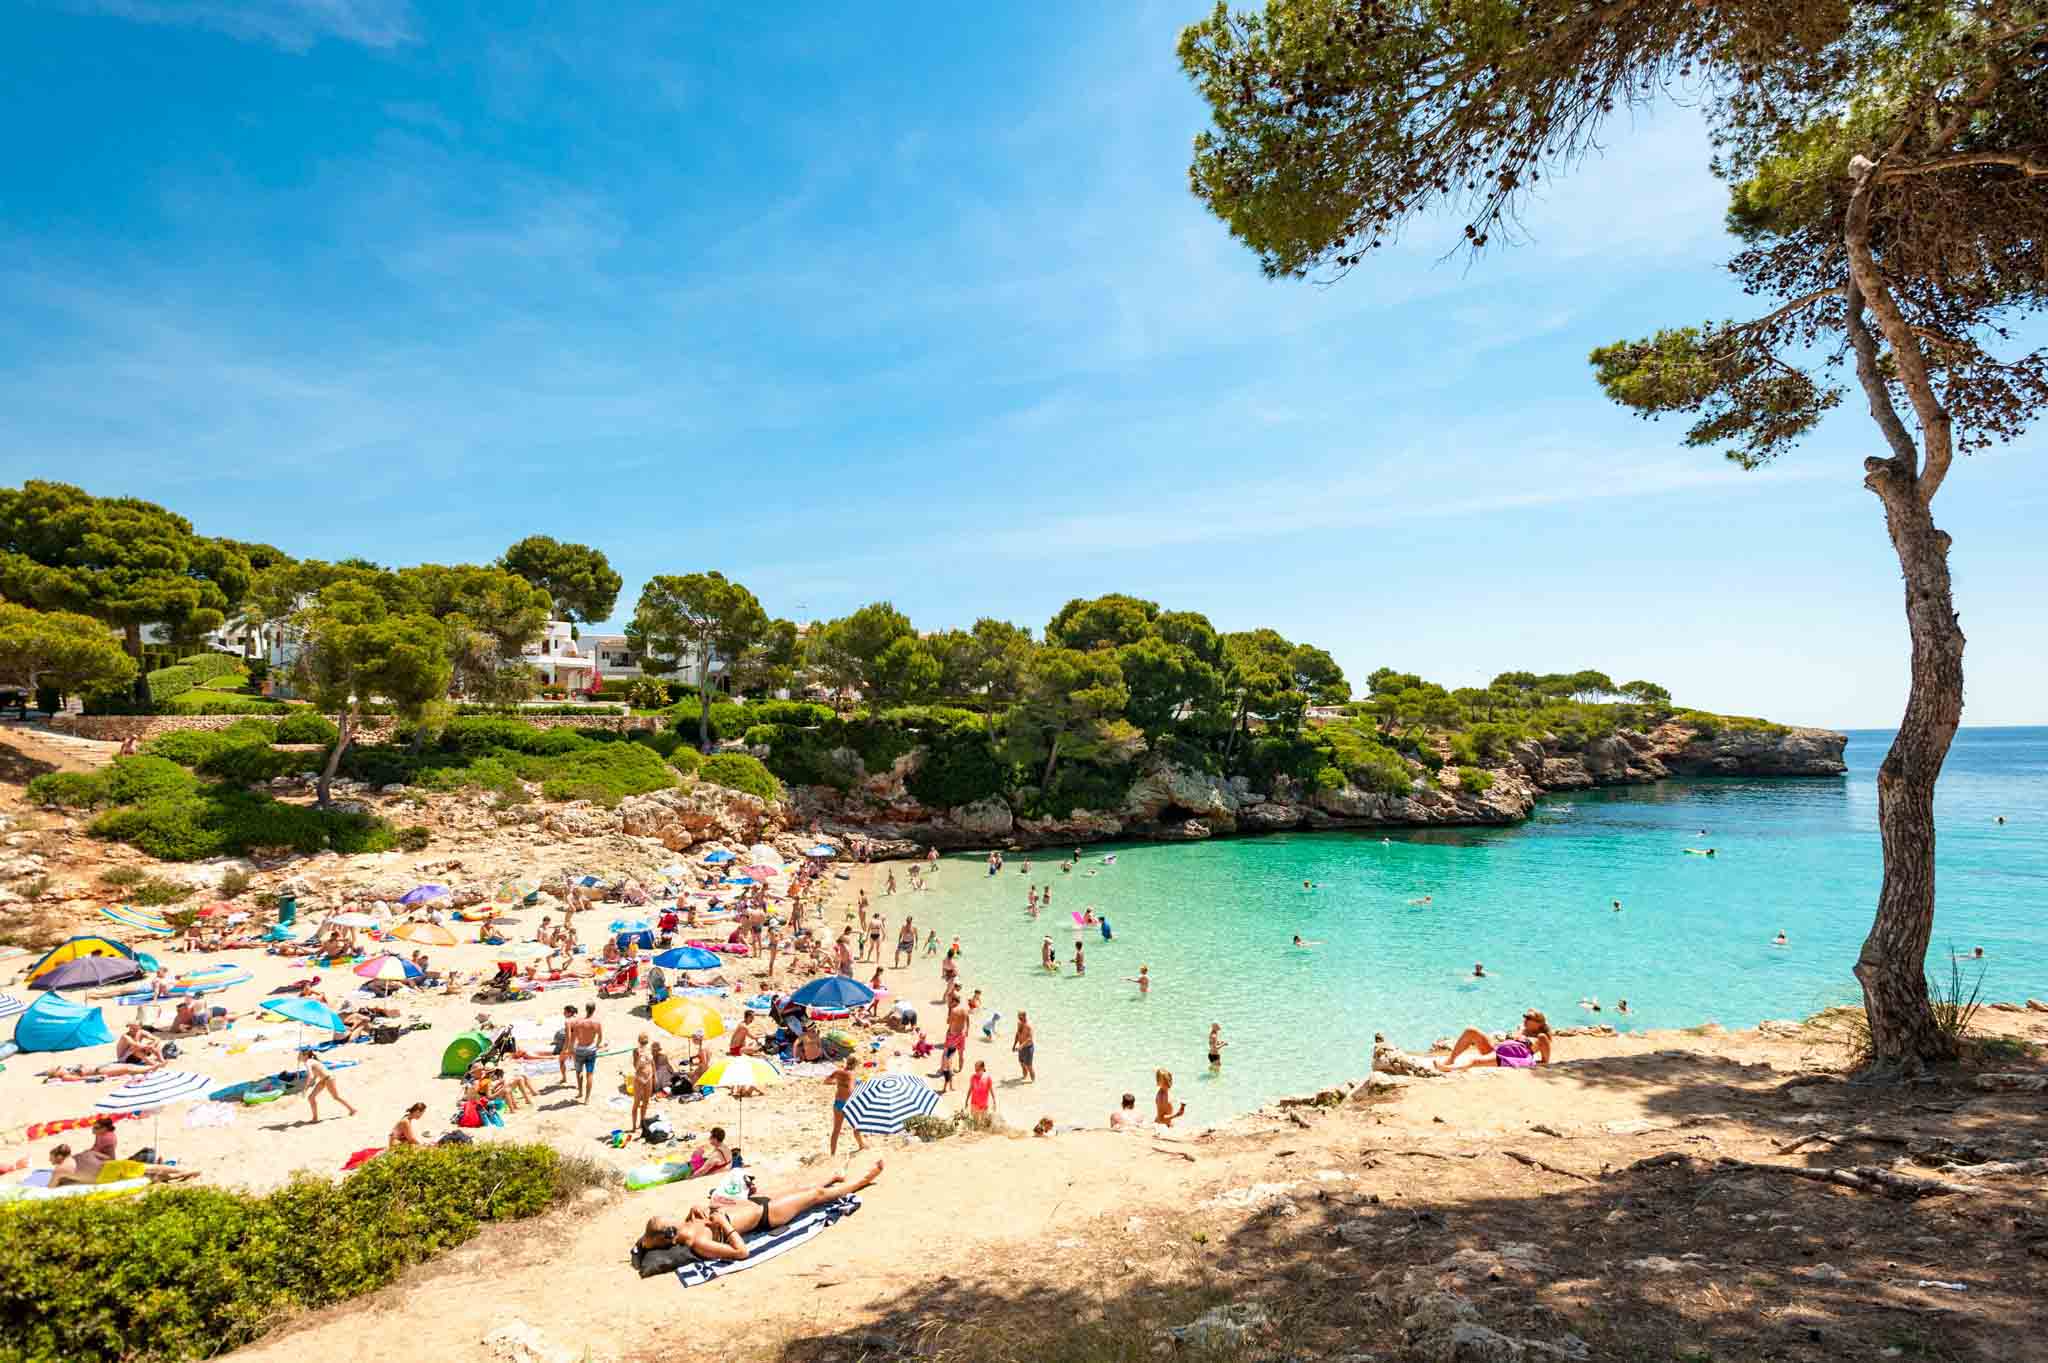 Majorca Holidays - Cala d'Or Beach, Majorca, Balearic Islands, Spain